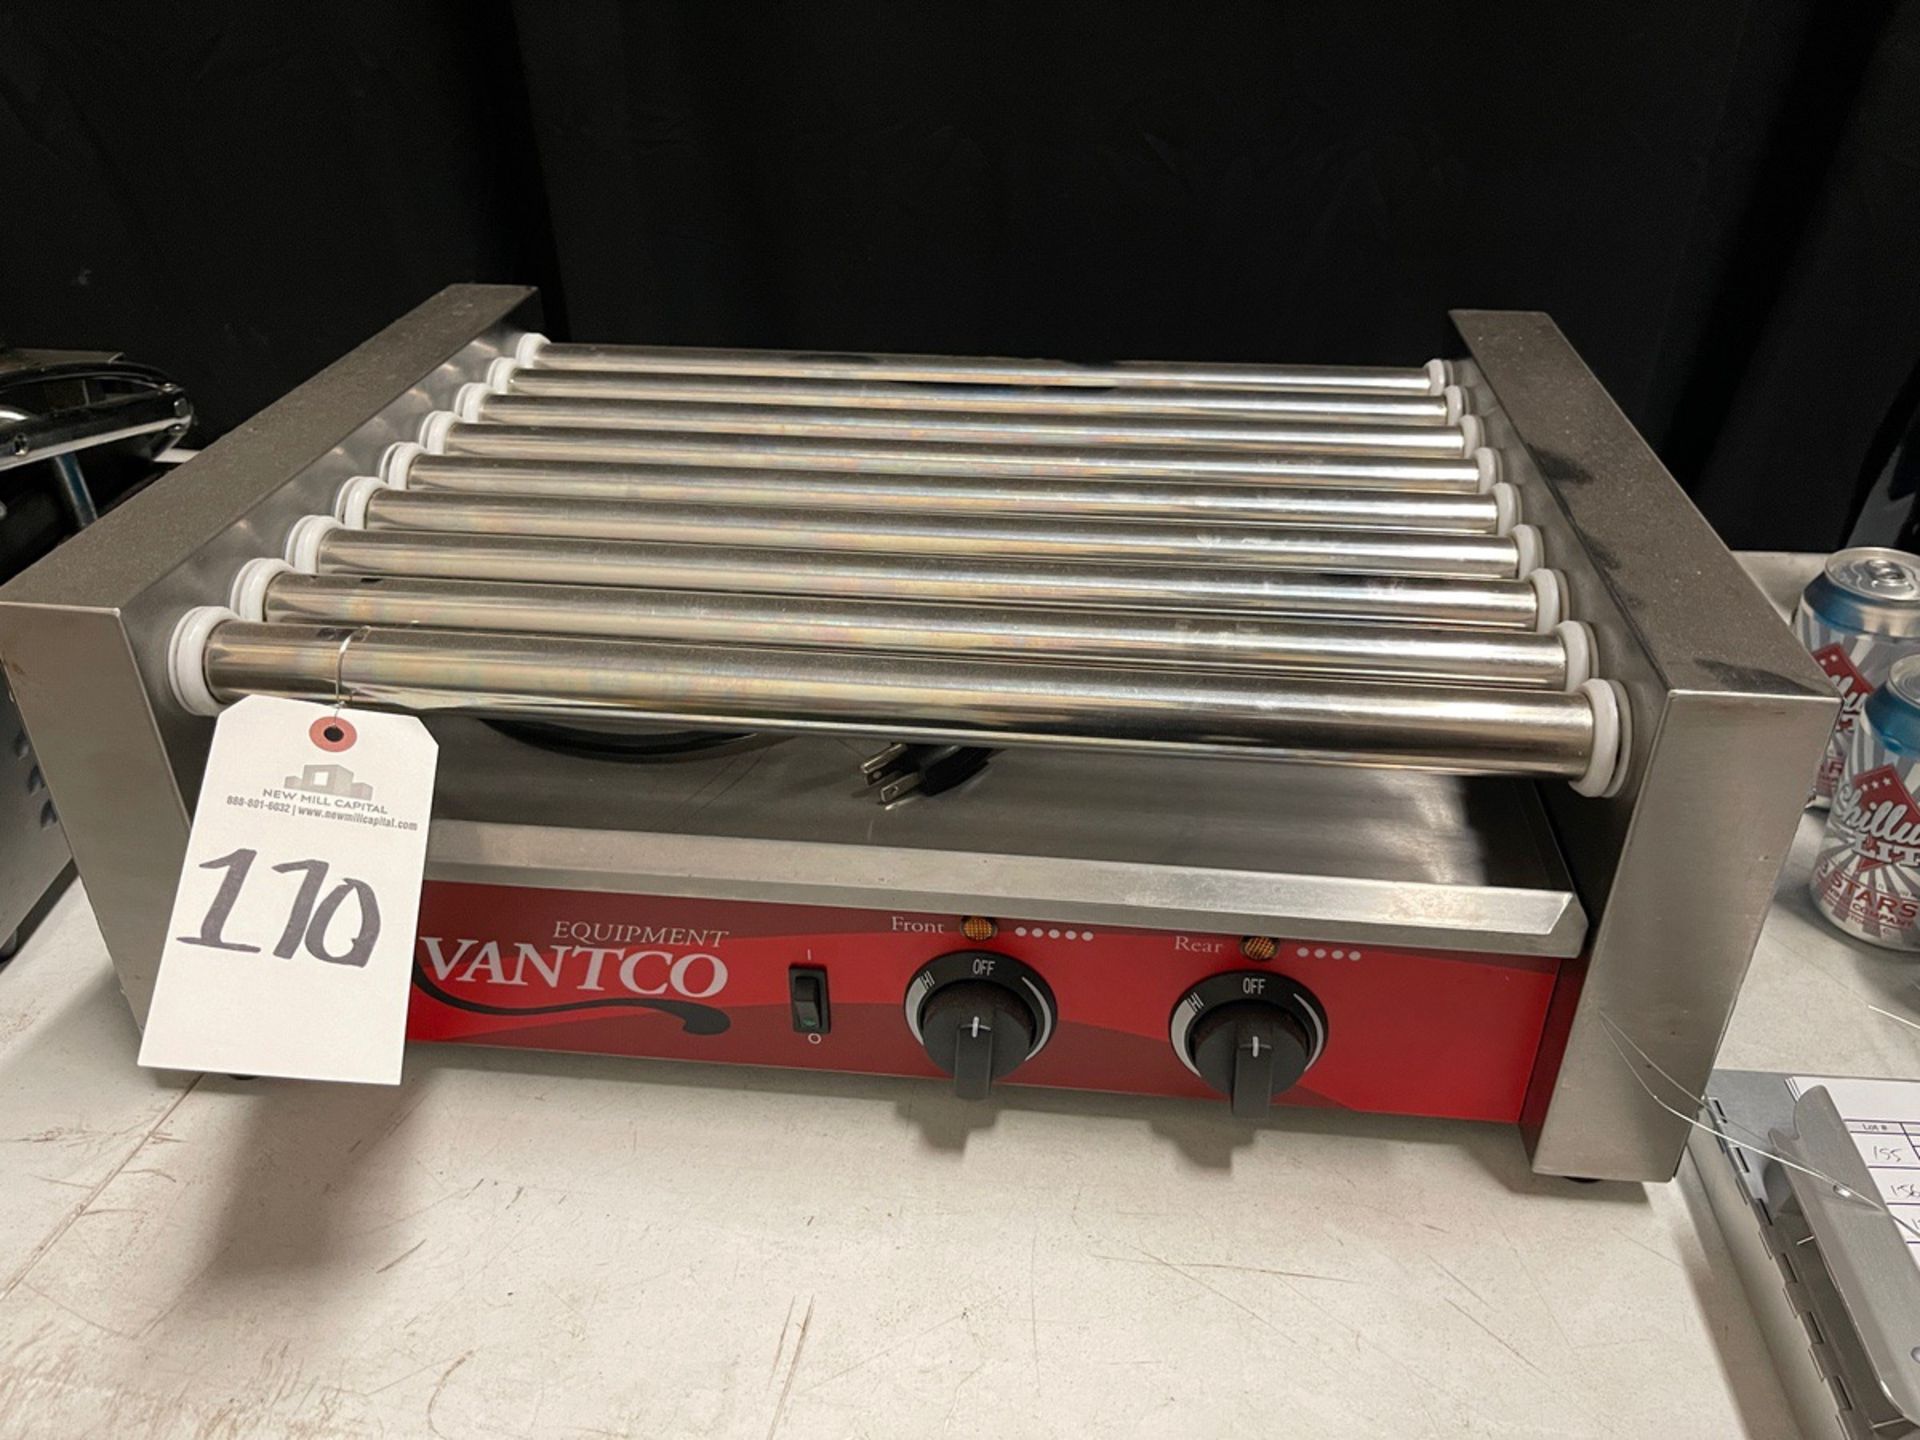 Avantco Hot Dog Roller Grill, S/N CK-181105R-266N | Rig Fee $10